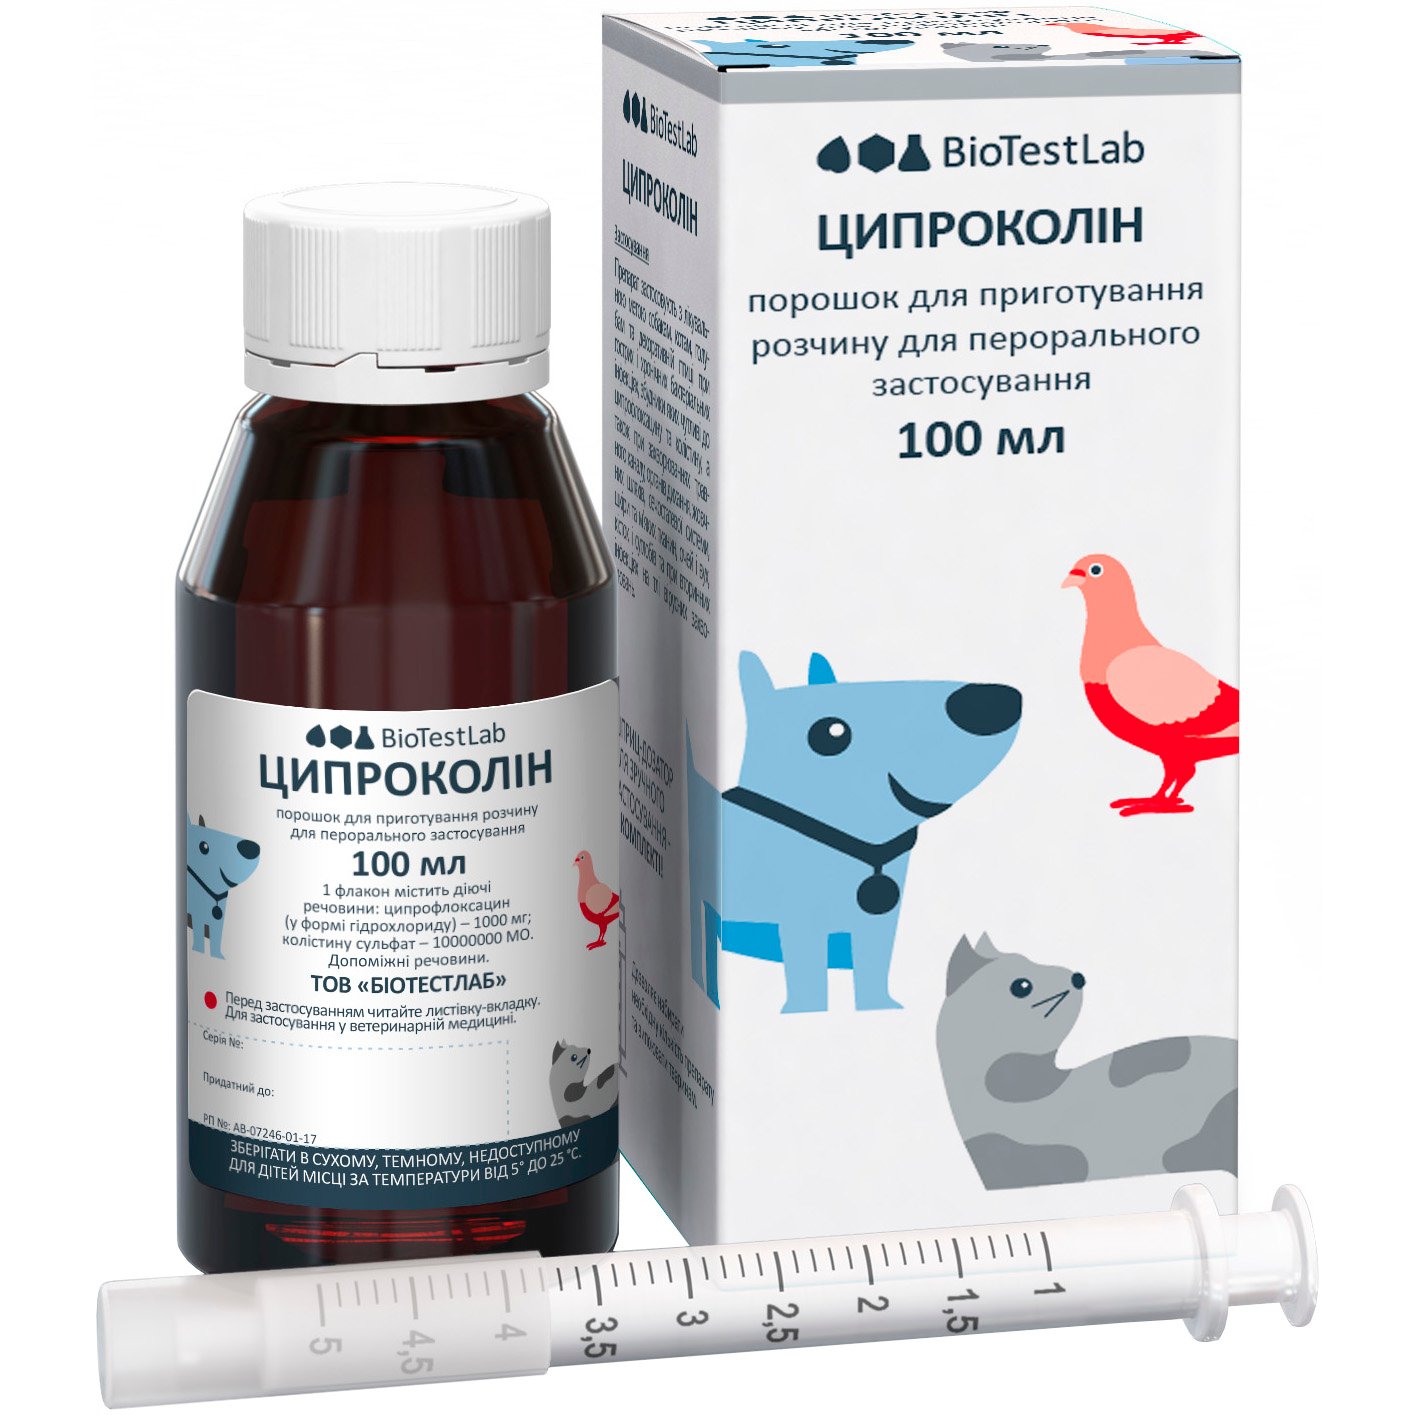 Антибиотик широкого спектра действия для животных BioTestLab Ципроколин 100 мл - фото 1